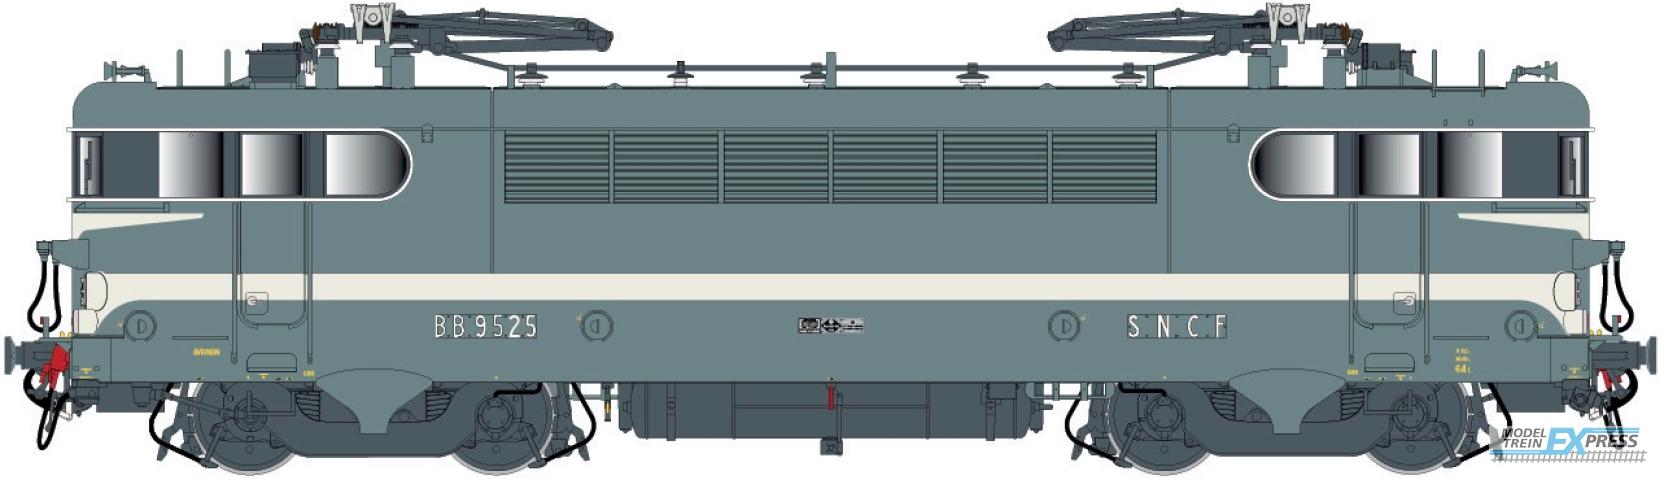 LS Models 10750 BB 9525, Béziers-livrei, brede witte lijn, geschilderde snorren, depot Avignon  /  Ep. IV  /  SNCF  /  HO  /  AC  /  1 P.